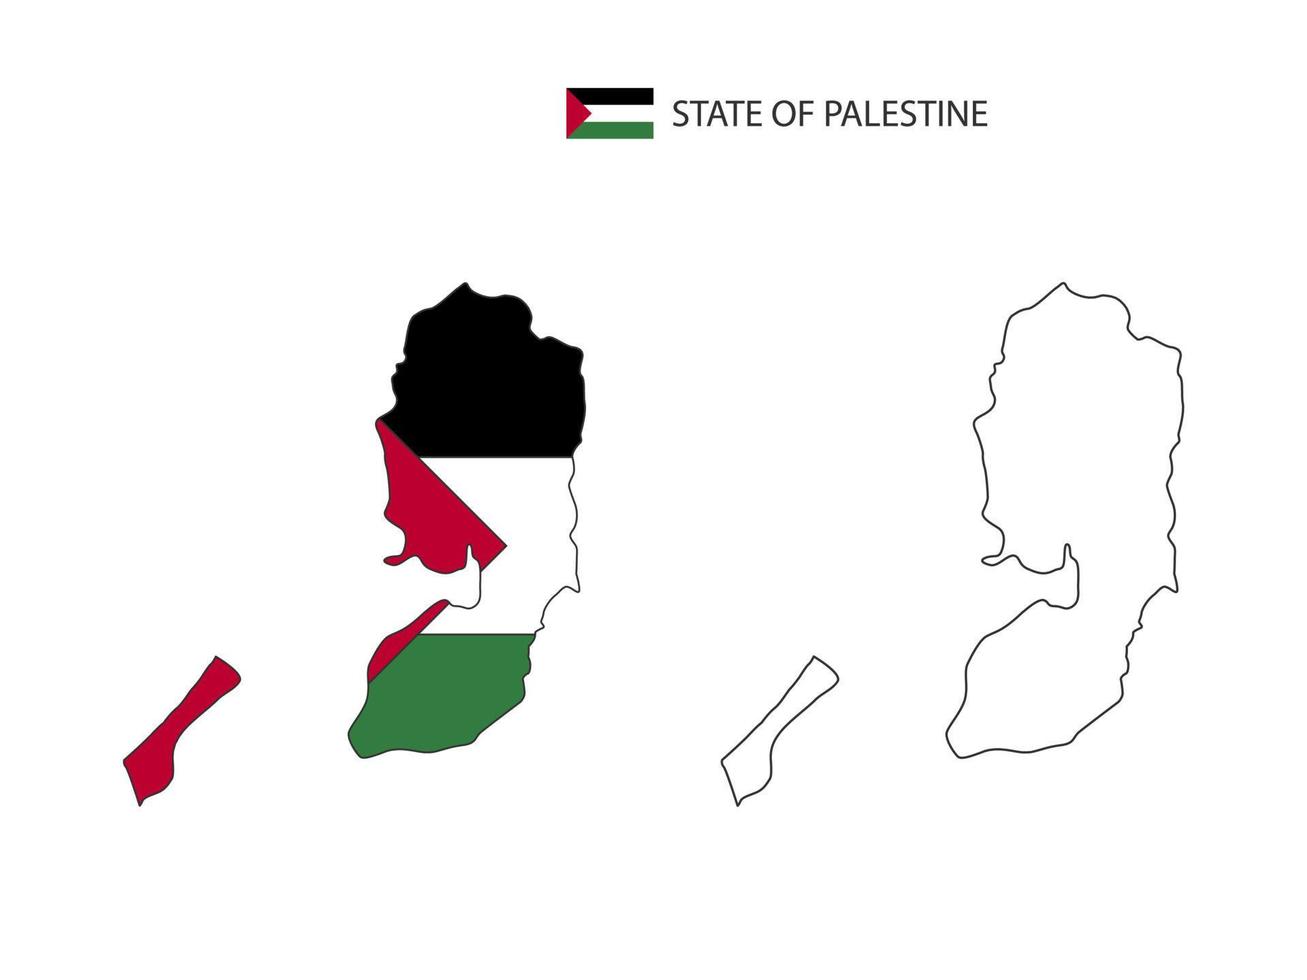 vector de ciudad de mapa de estado de palestina dividido por estilo de simplicidad de contorno. tiene 2 versiones, versión de línea delgada negra y versión de color de bandera de país. ambos mapas estaban en el fondo blanco.